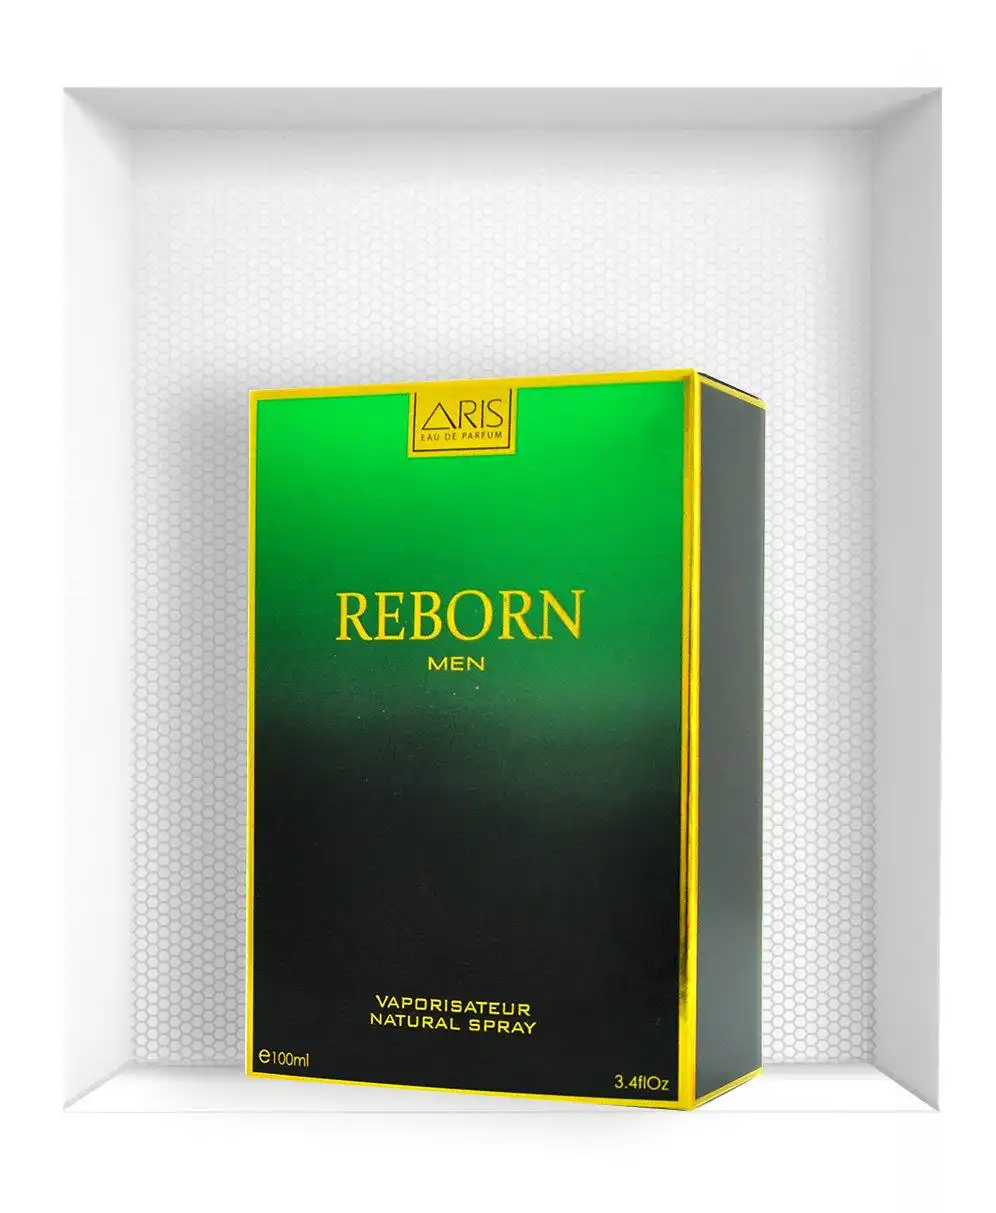 Aris Reborn Eau De Parfum For Men - 100Ml